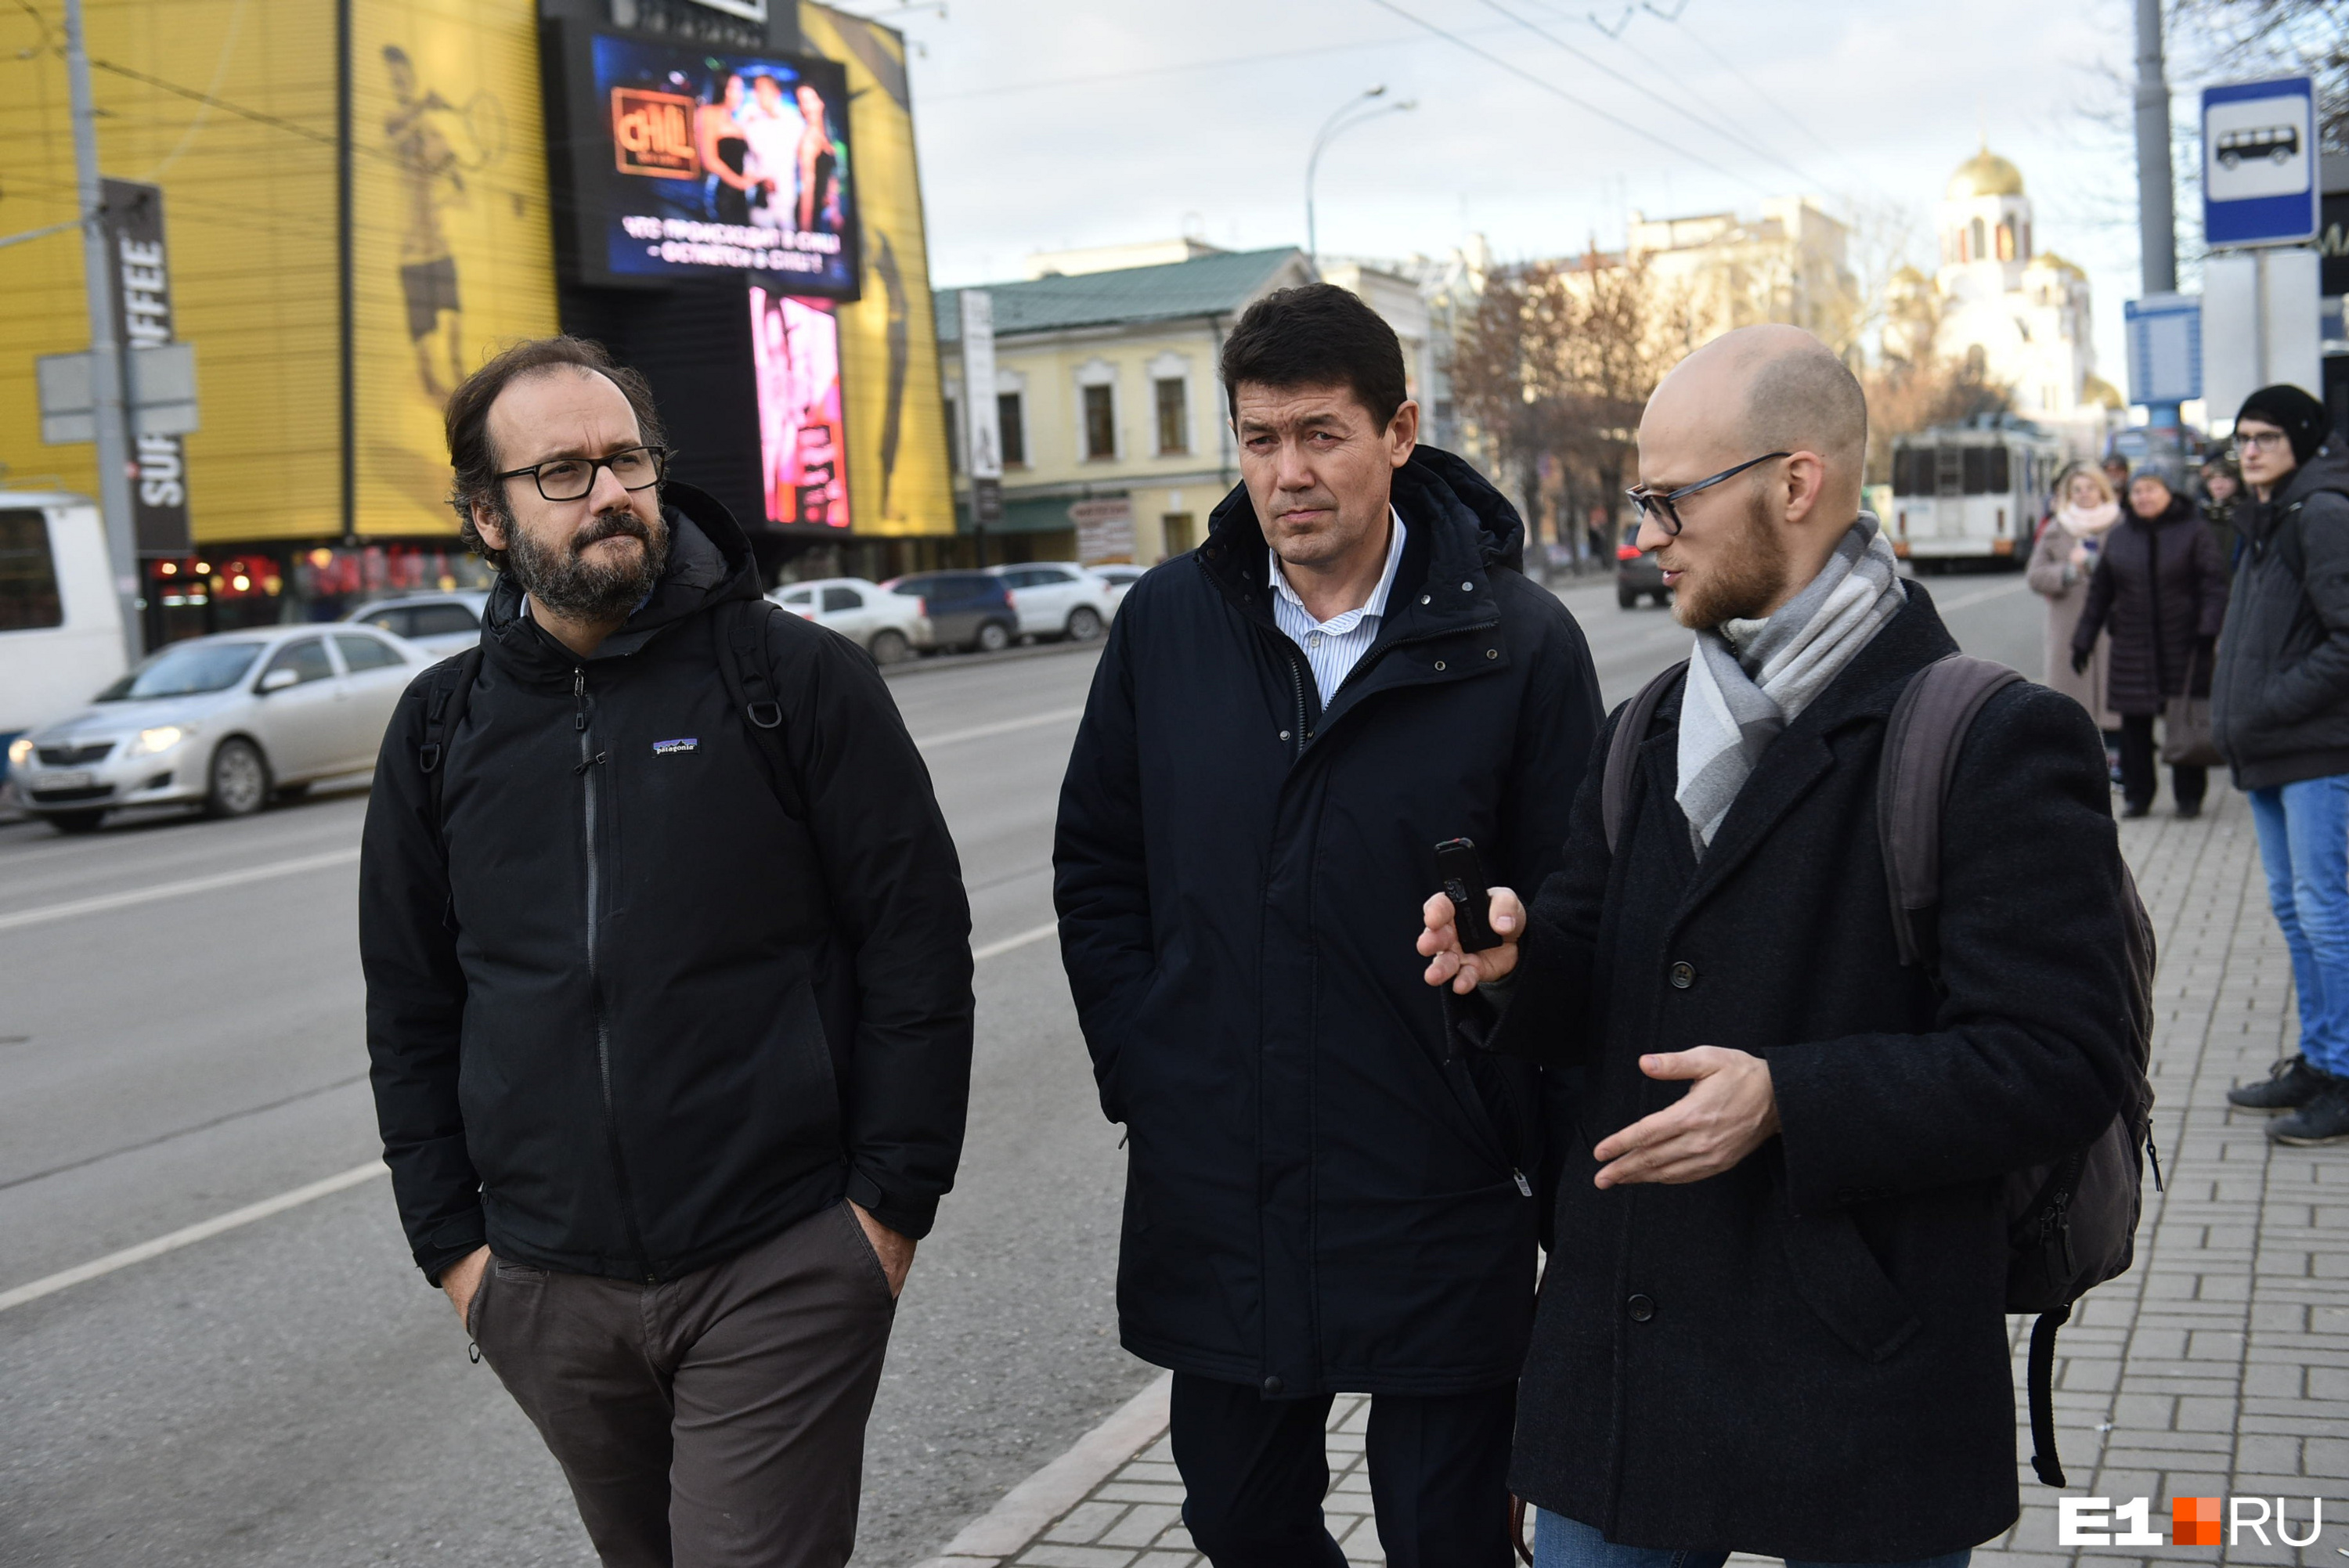 Оказывается, Федерико знает про несостоявшуюся реформу общественного транспорта Екатеринбурга